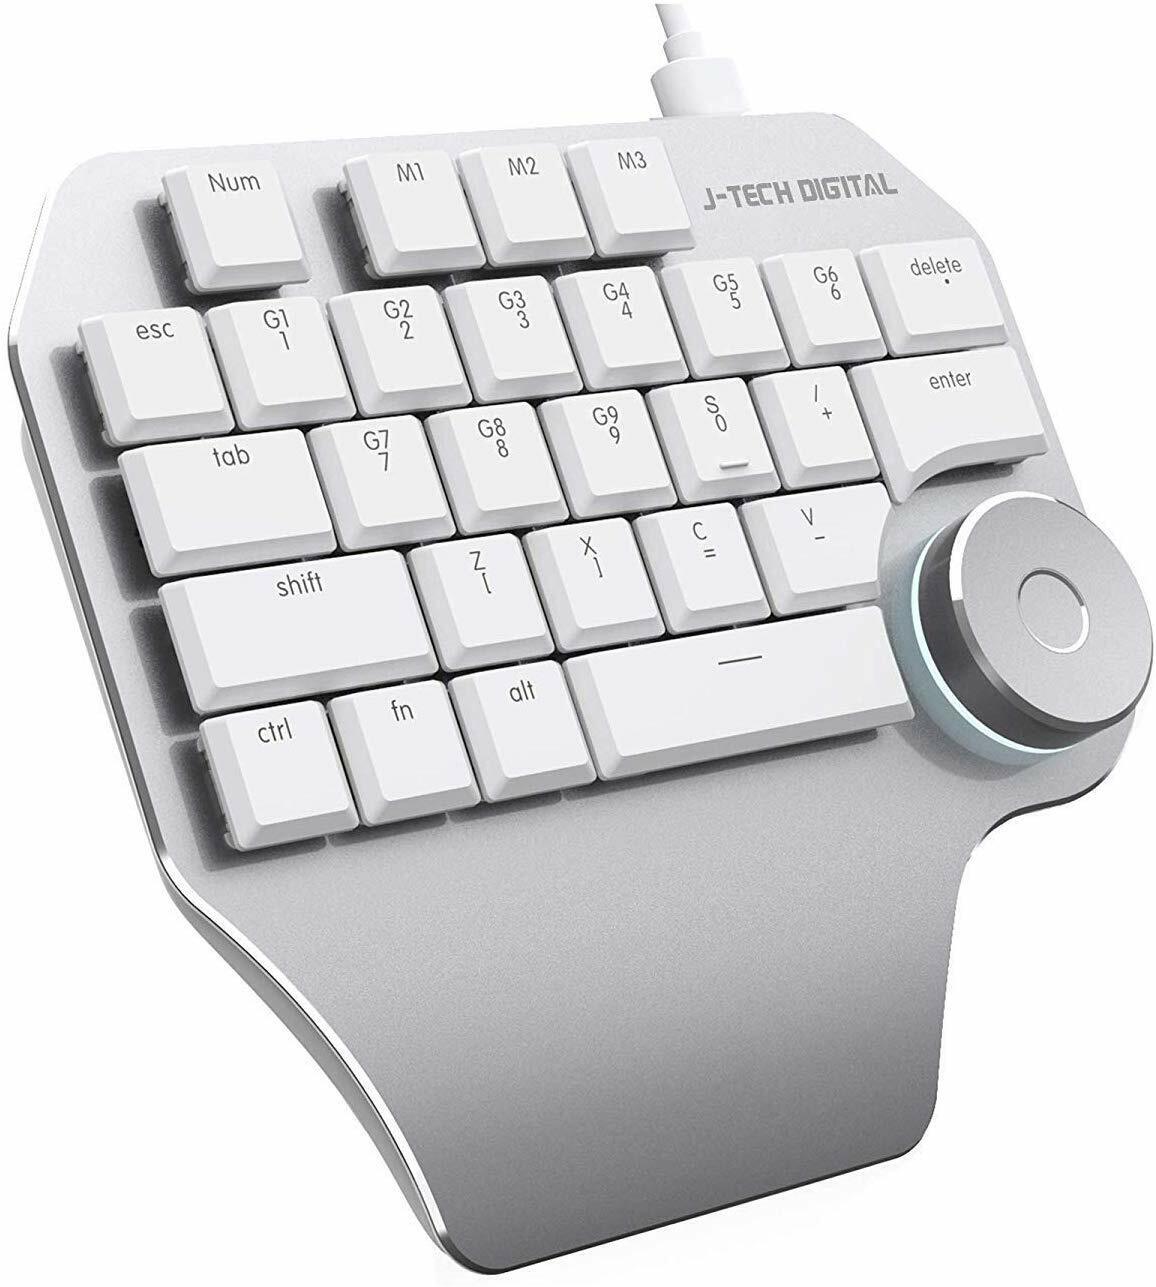 J-Tech Digital Mechanical Designer Keyboard/ Keypad, Backlit/ Smart Knob (White)